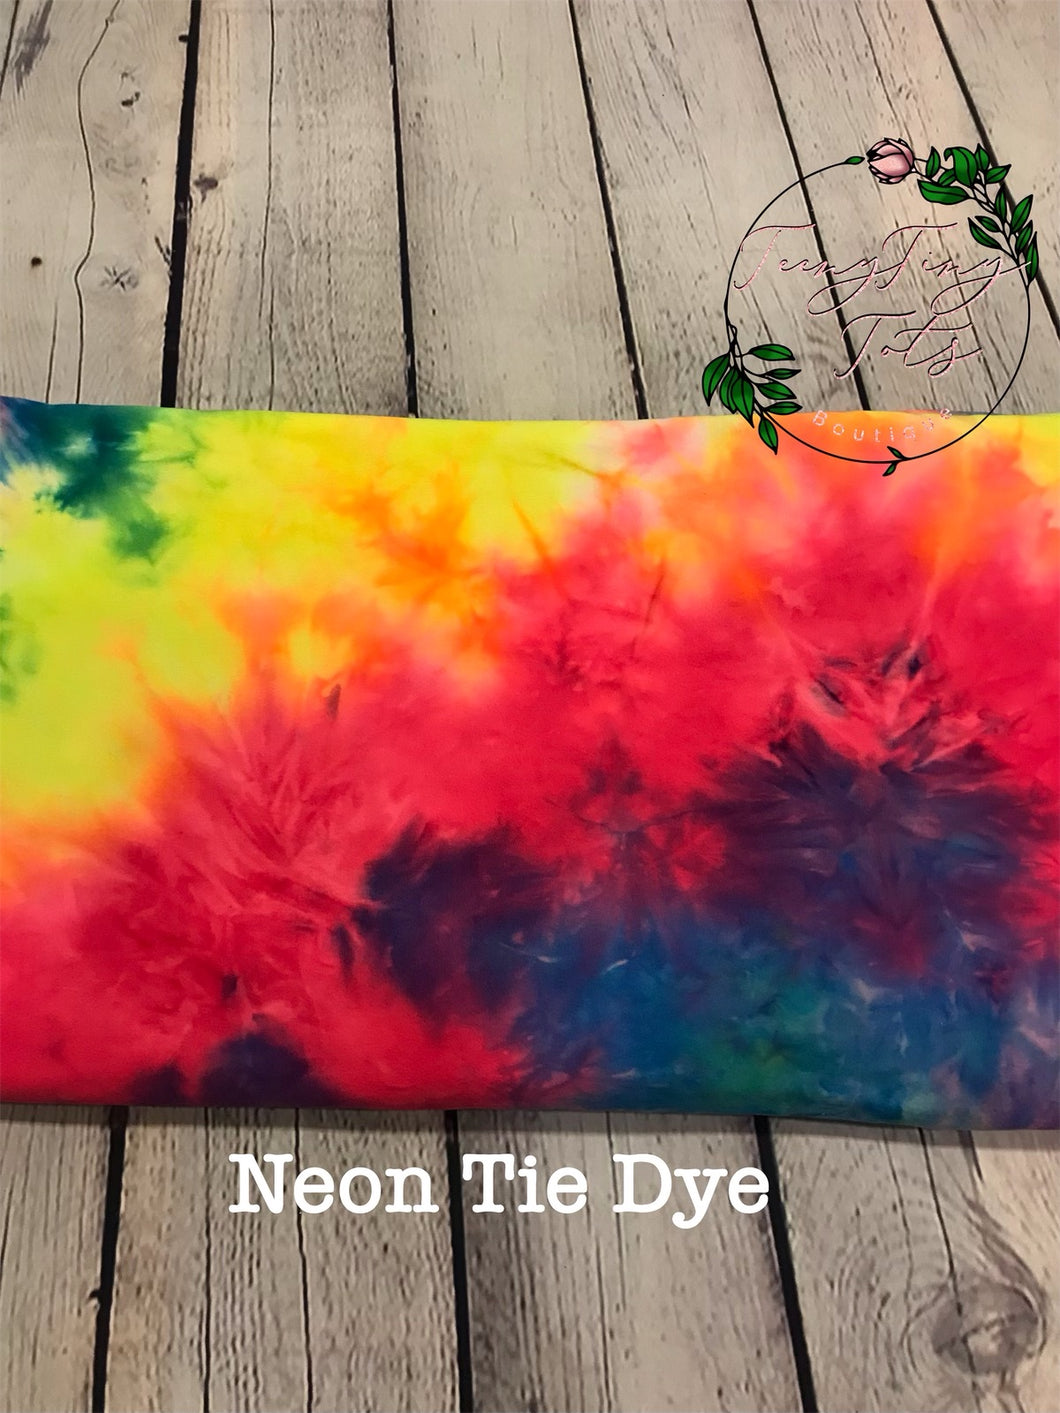 Neon Tie Dye Apparel